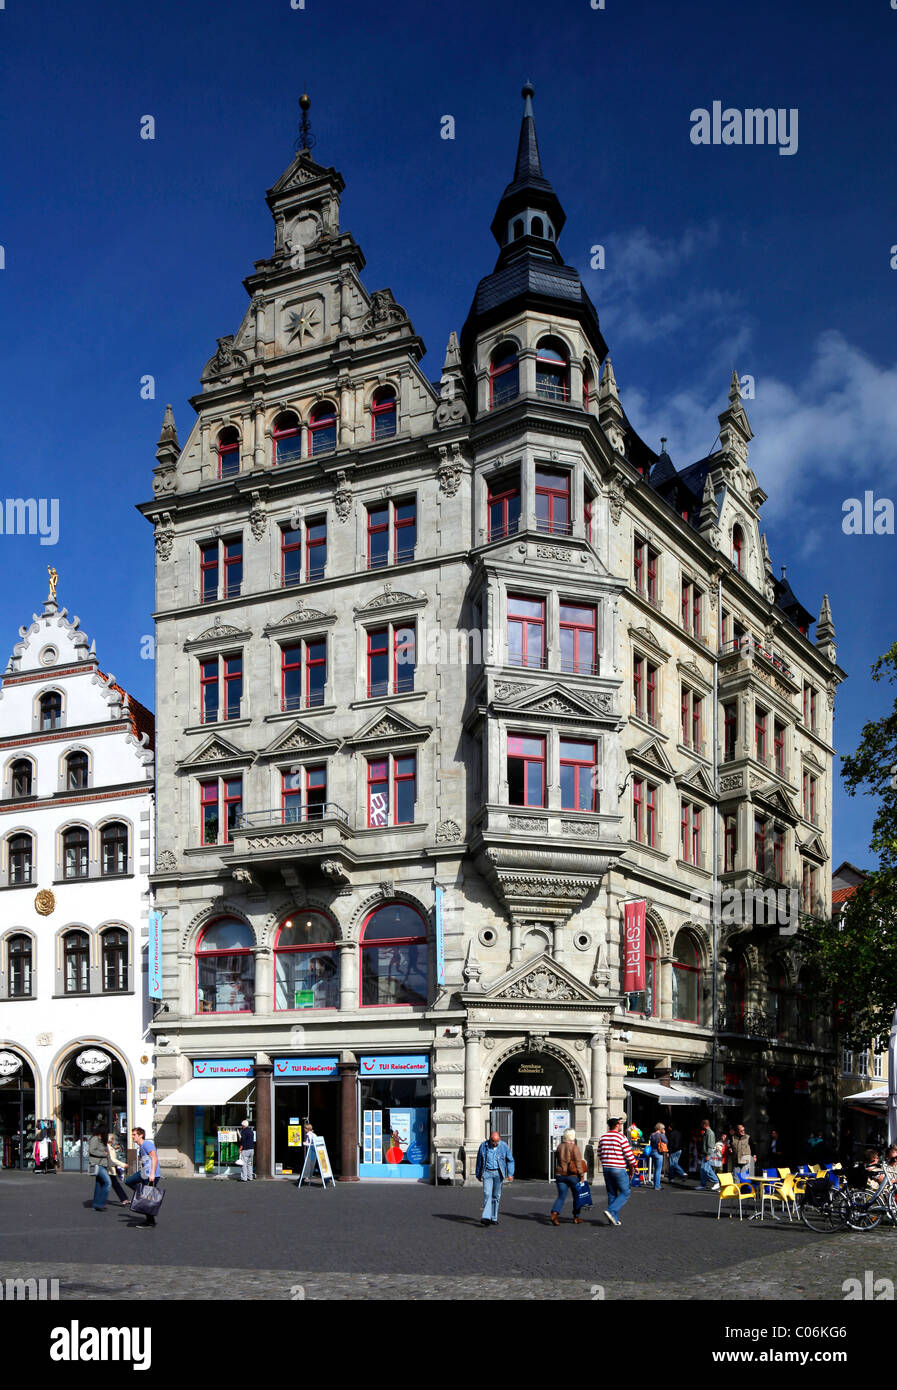 Haus zum Goldenen Stern immeuble sur place Kohlmarkt, Braunschweig, Brunswick, Basse-Saxe, Allemagne, Europe Banque D'Images